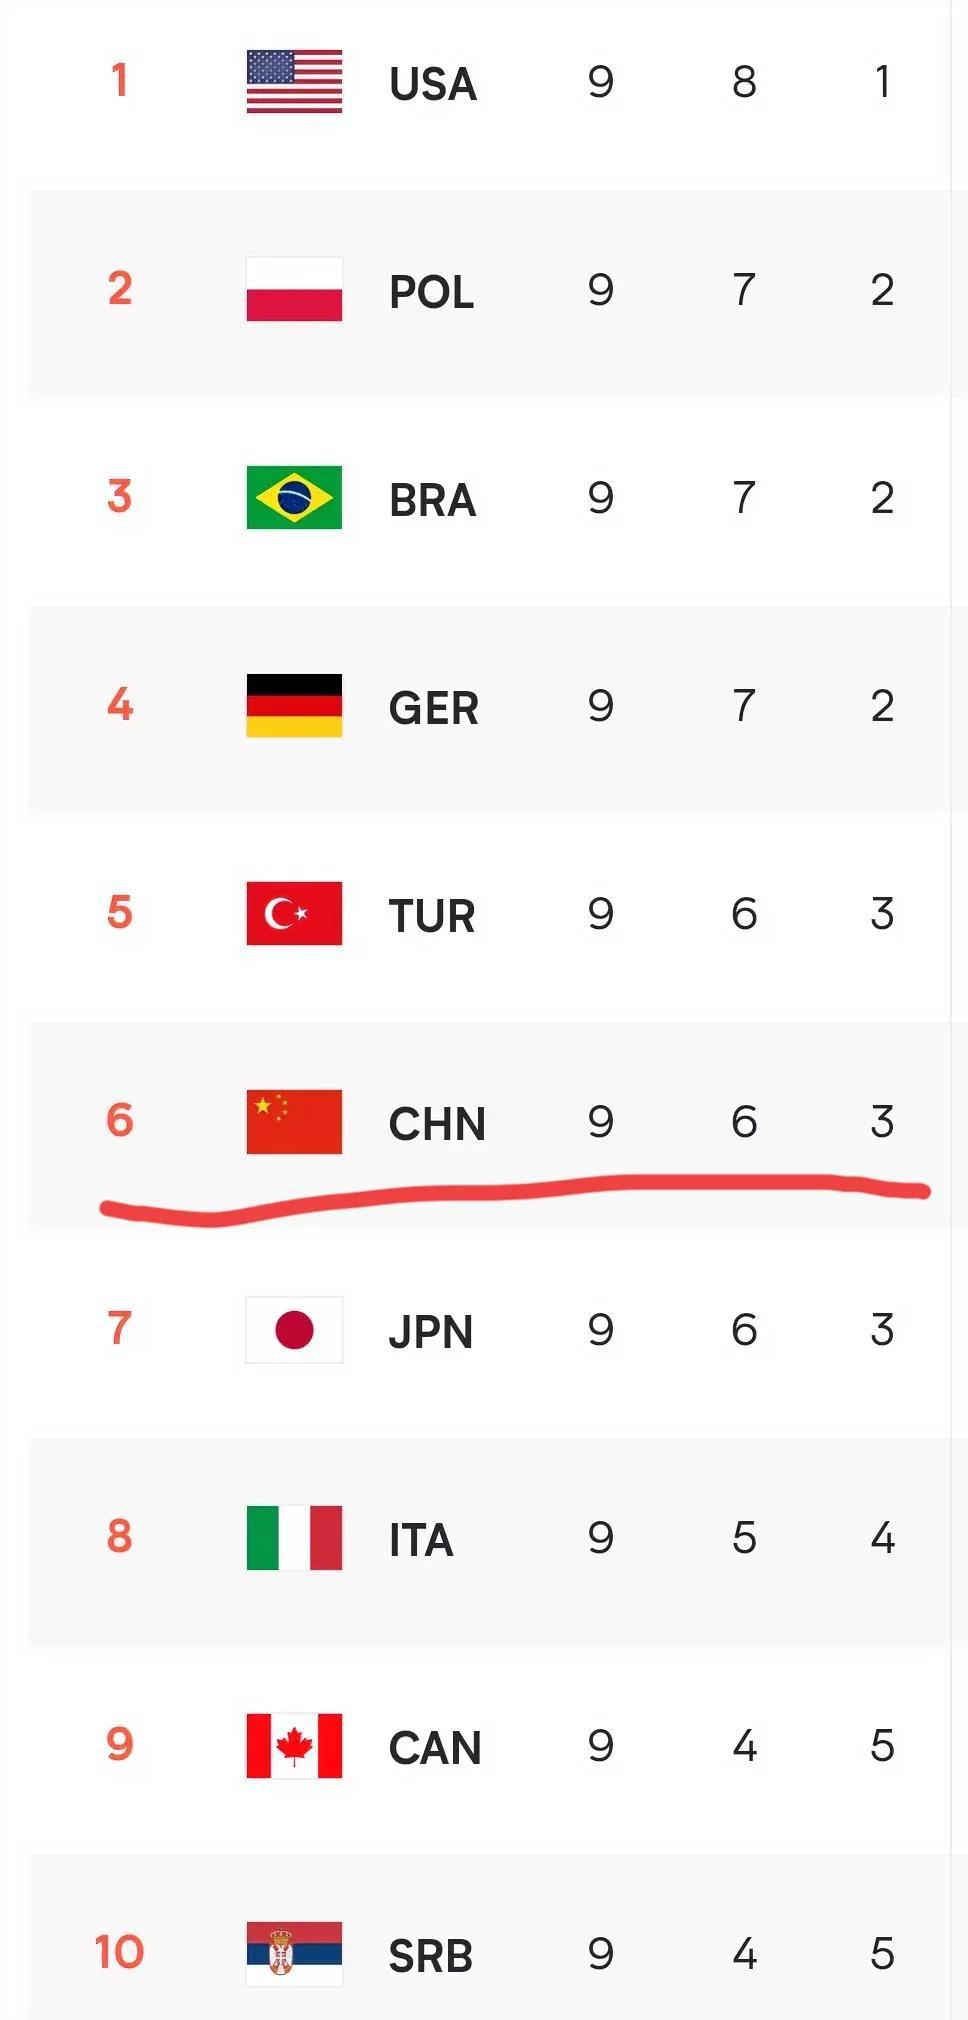  第九轮比赛结束，中国女排下滑到第六。
第一，美国
第二，波兰
第三，巴西
第四(2)